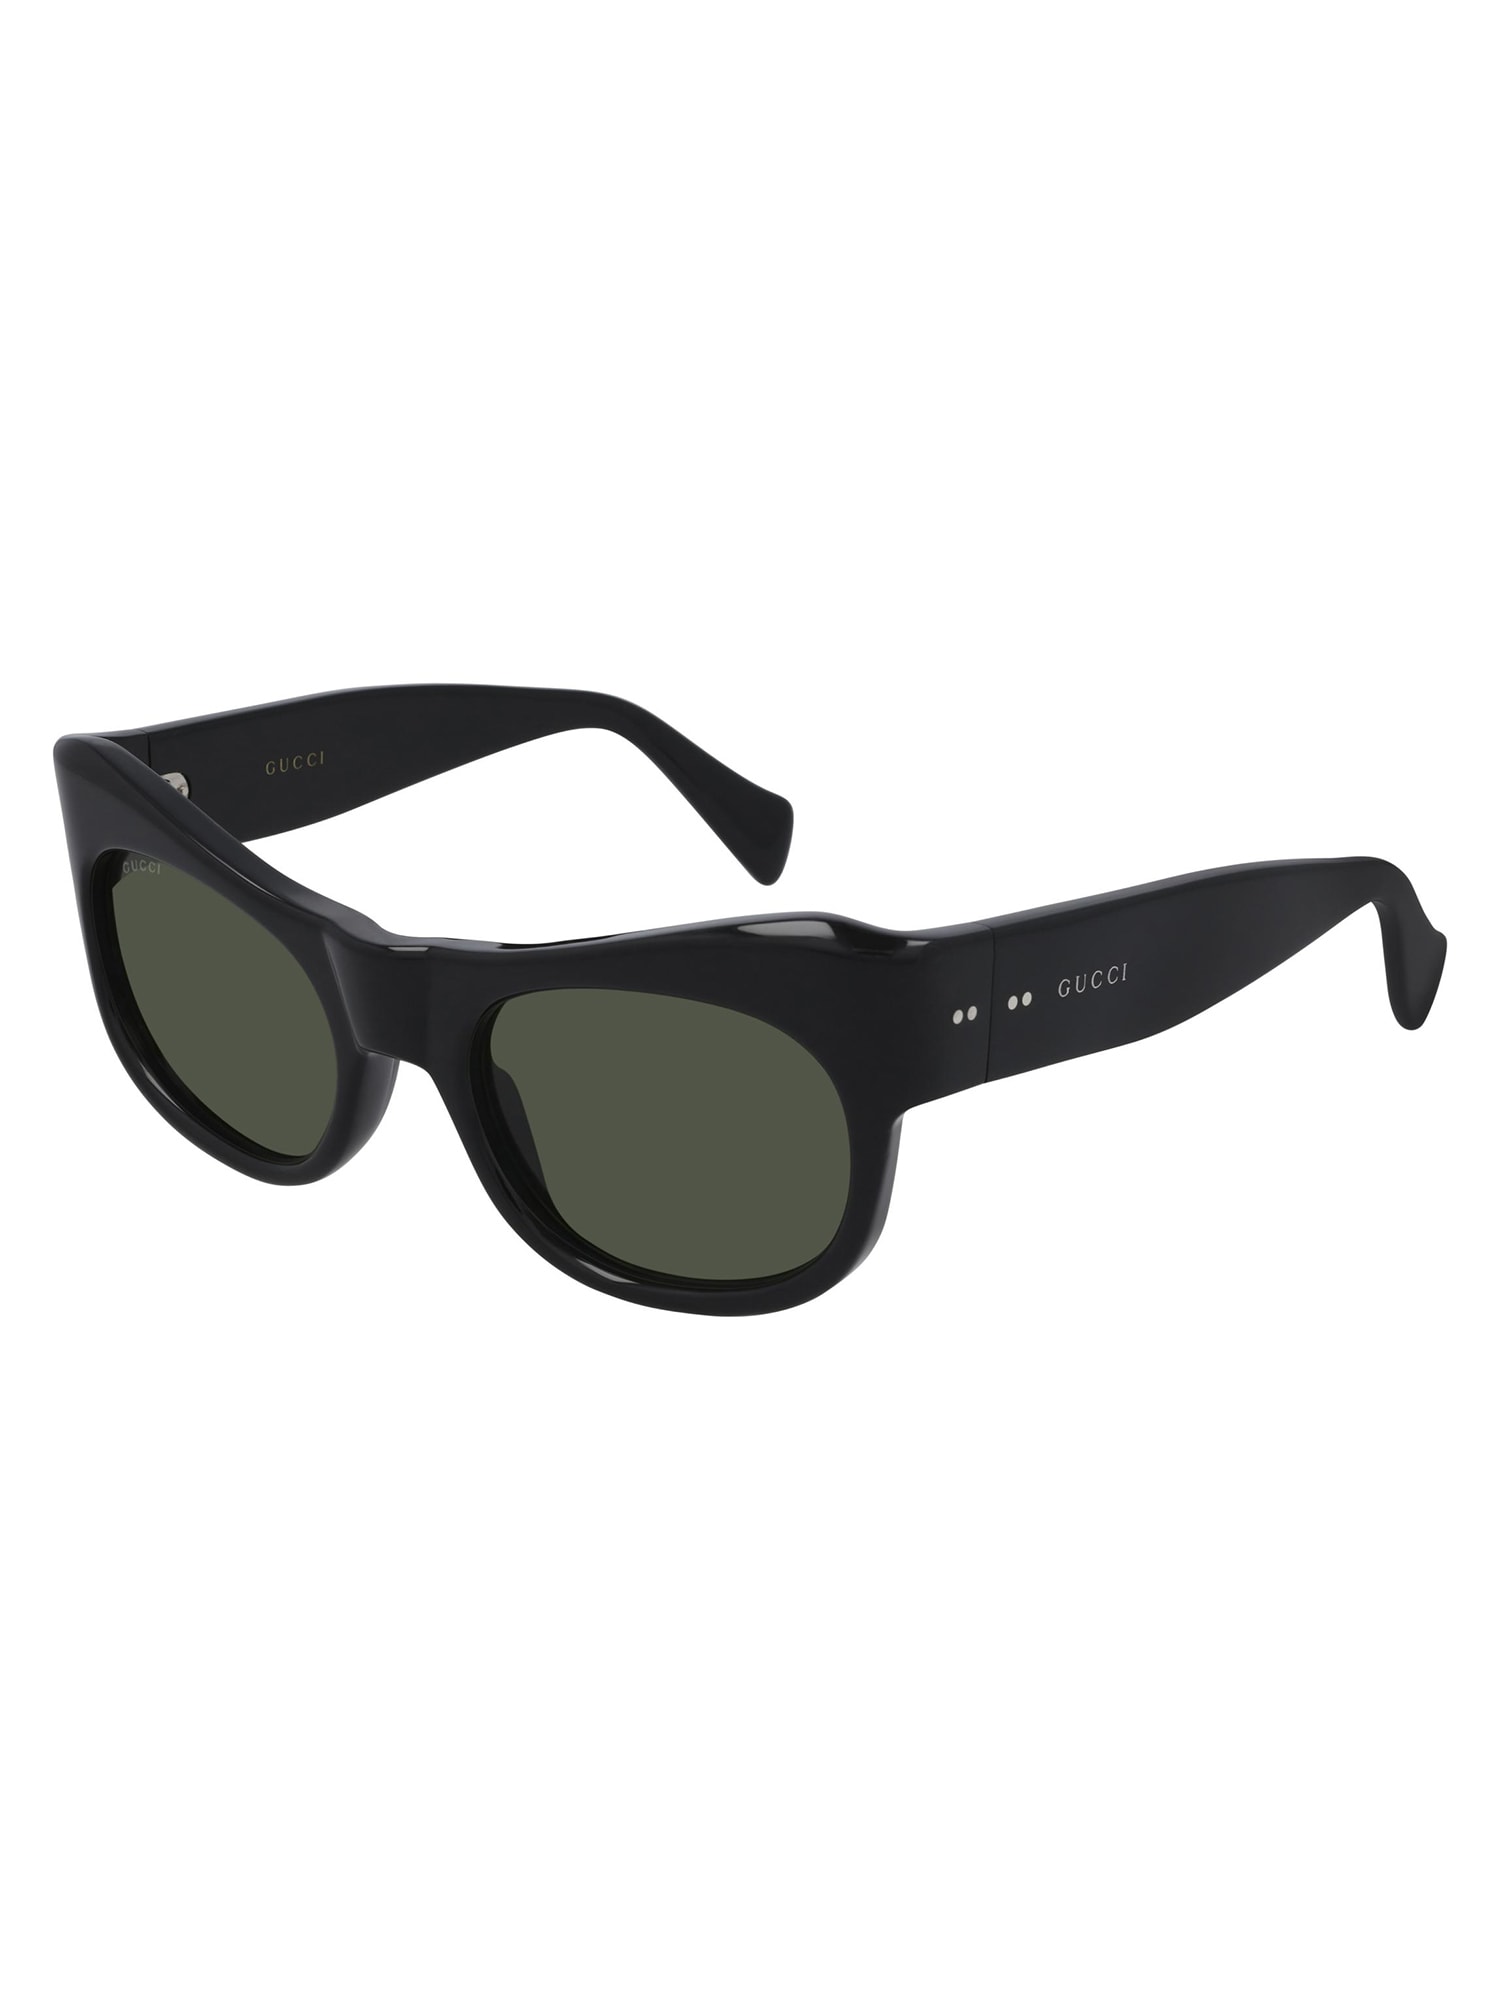 Gucci GG0870S Sunglasses